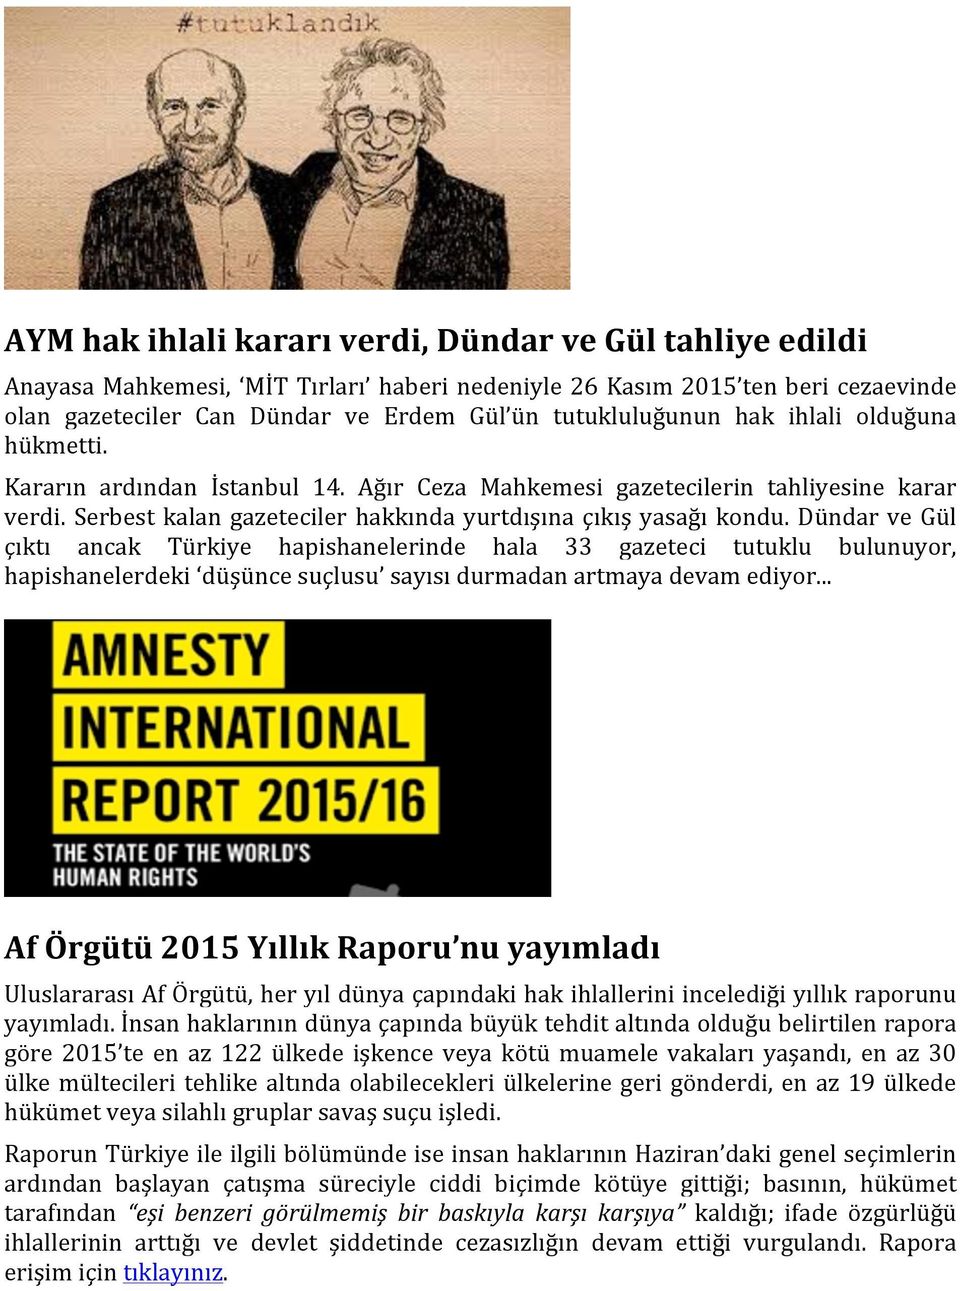 Dündar ve Gül çıktı ancak Türkiye hapishanelerinde hala 33 gazeteci tutuklu bulunuyor, hapishanelerdeki düşünce suçlusu sayısı durmadan artmaya devam ediyor.